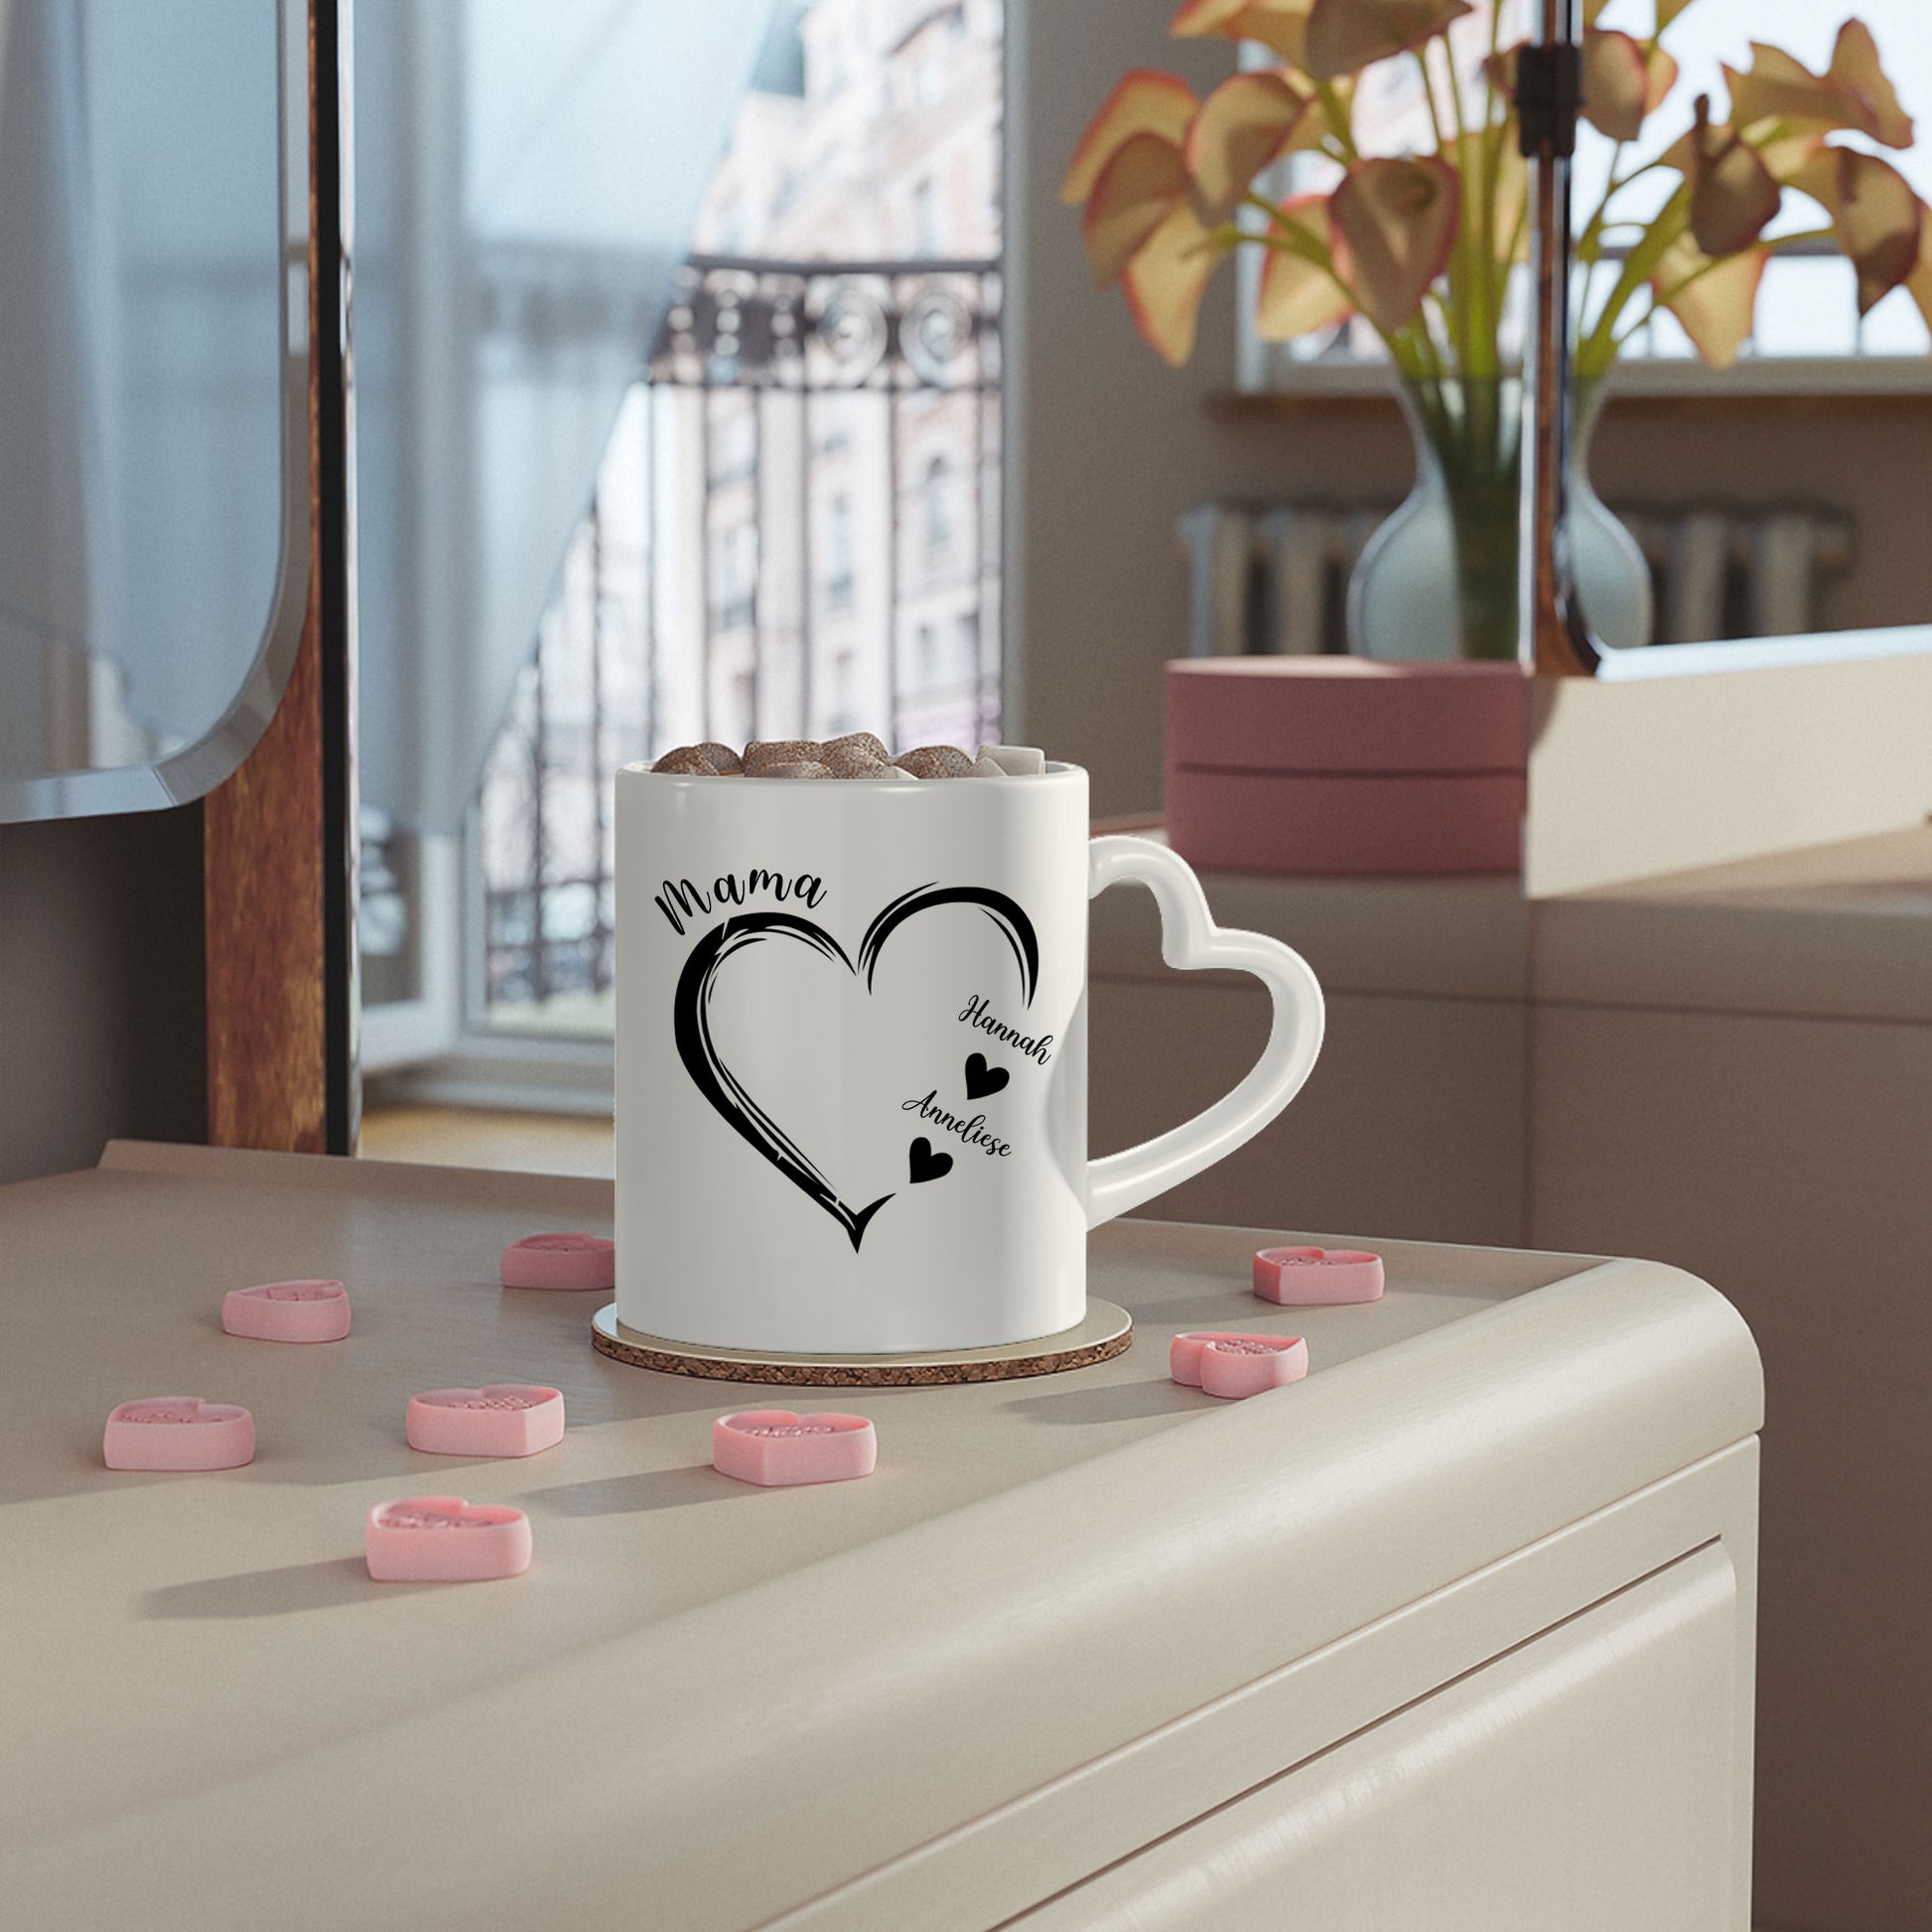 Mamas Herz - Personalisierte Geschenke - Tasse Für Mama